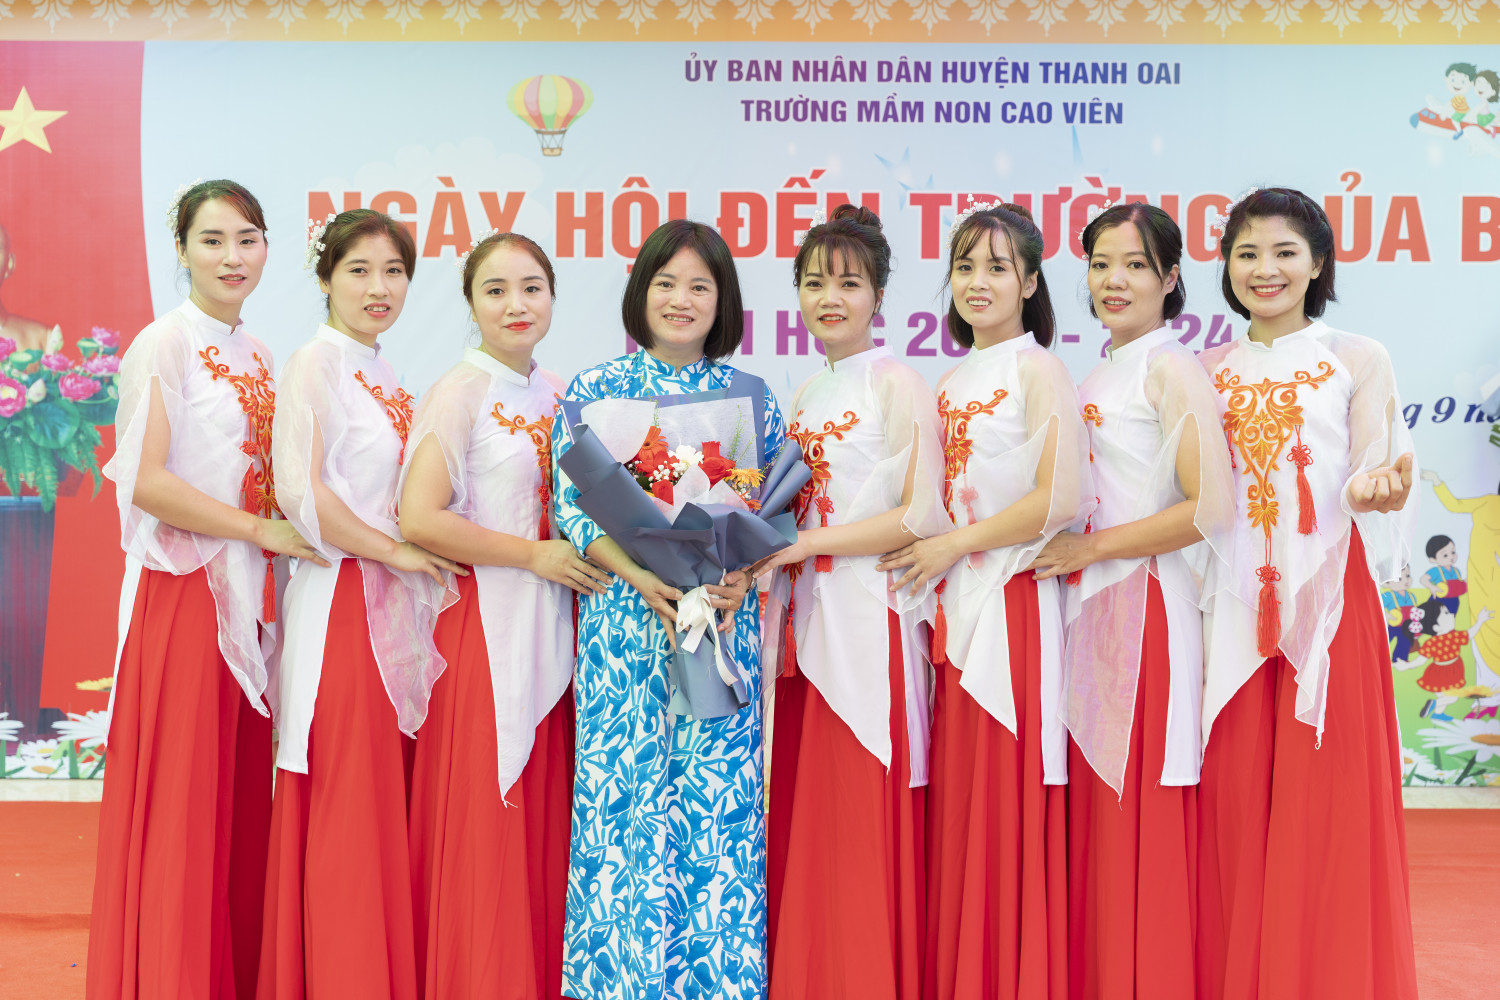 Cô giáo Nguyễn Thị Lý- Bí thư chi bộ- Hiệu trưởng nhà trường chụp ảnh cùng đội văn nghệ